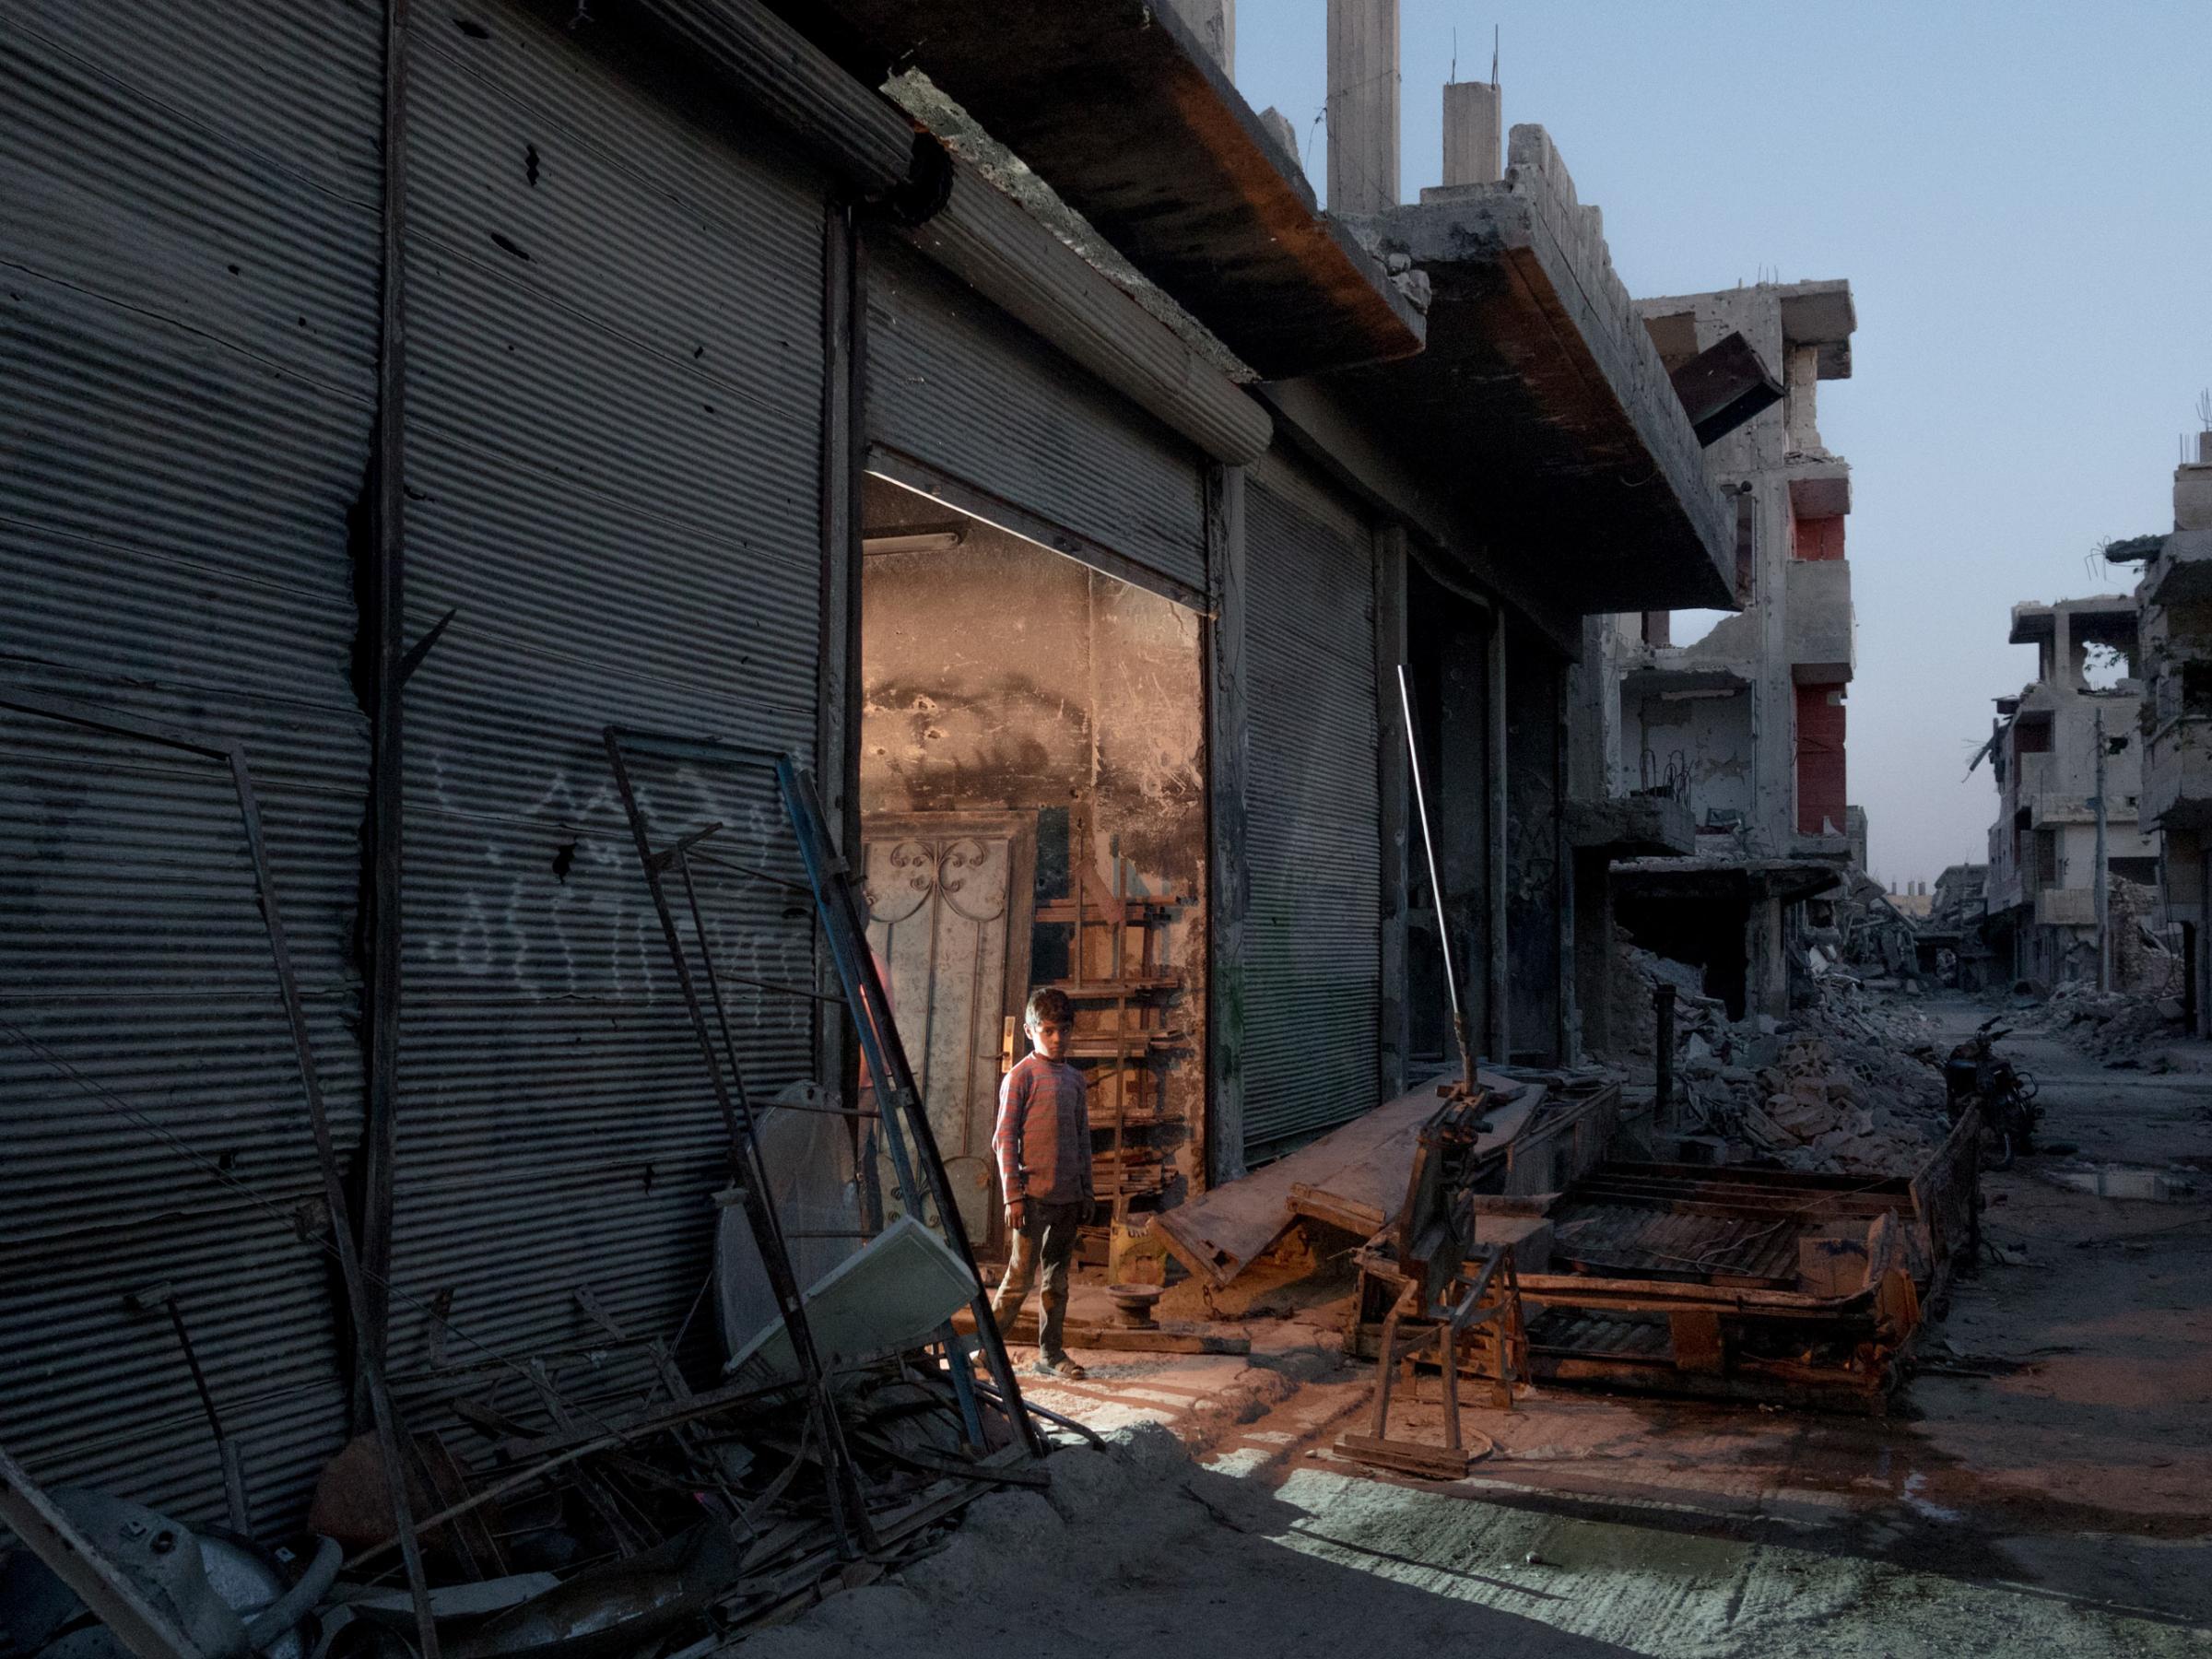 SYRIA. Kobani / Kobane (Arabic: Ayn al Arab) . 08 August 2015. A young boy working as a blacksmith